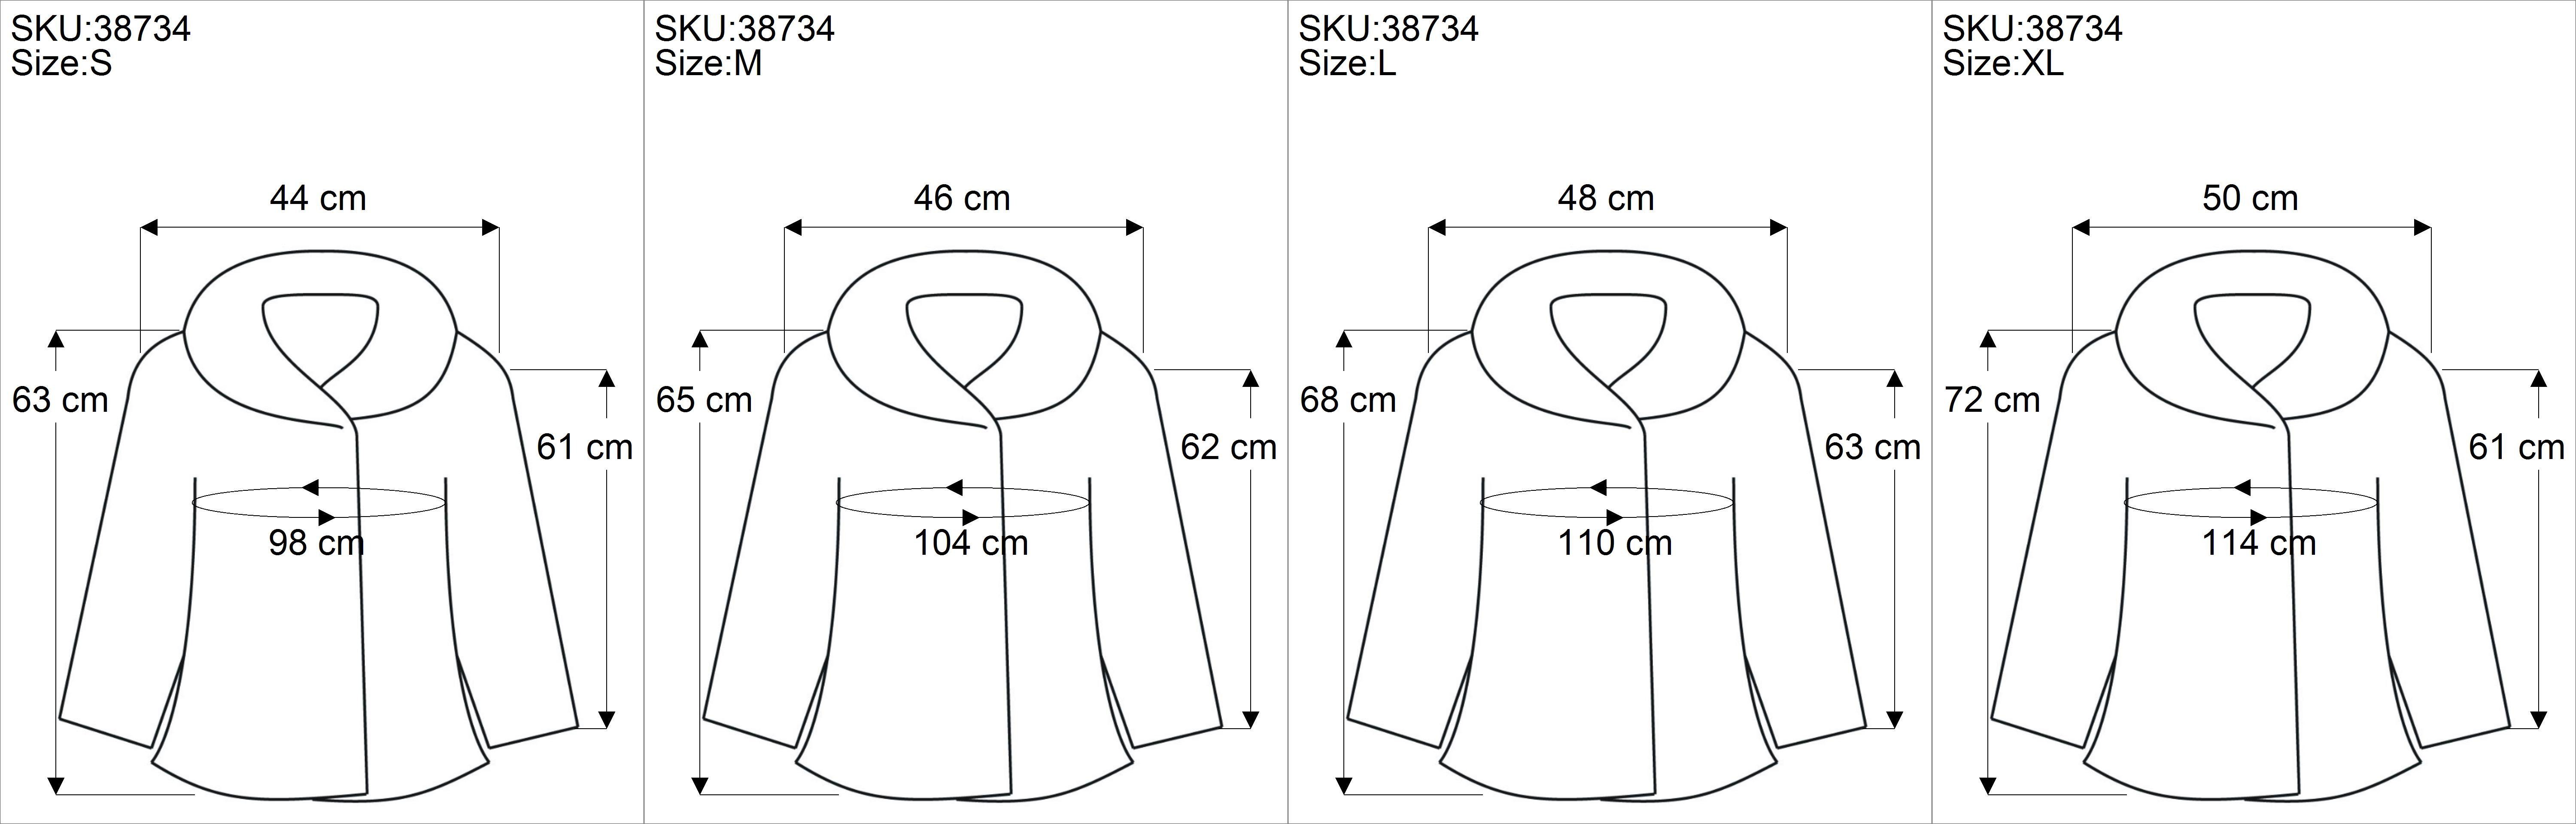 Jacke Bekleidung - Zipfelkapuze schwarz Guru-Shop Langjacke alternative mit Regenbogenjacke,